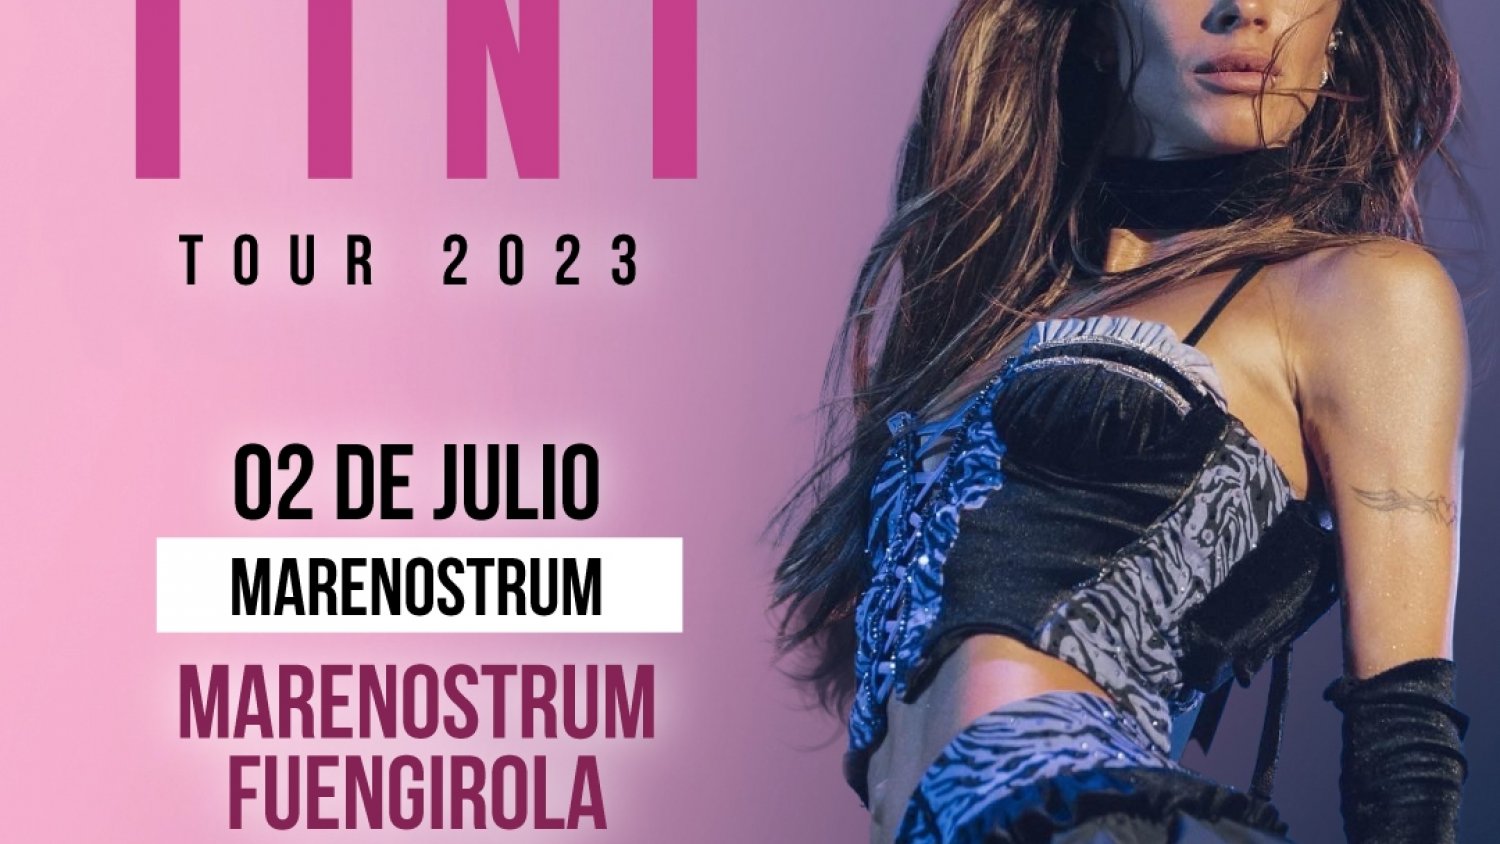 La estrella argentina Tini ofrecerá un concierto el 2 de julio en Marenostrum Fuengirola